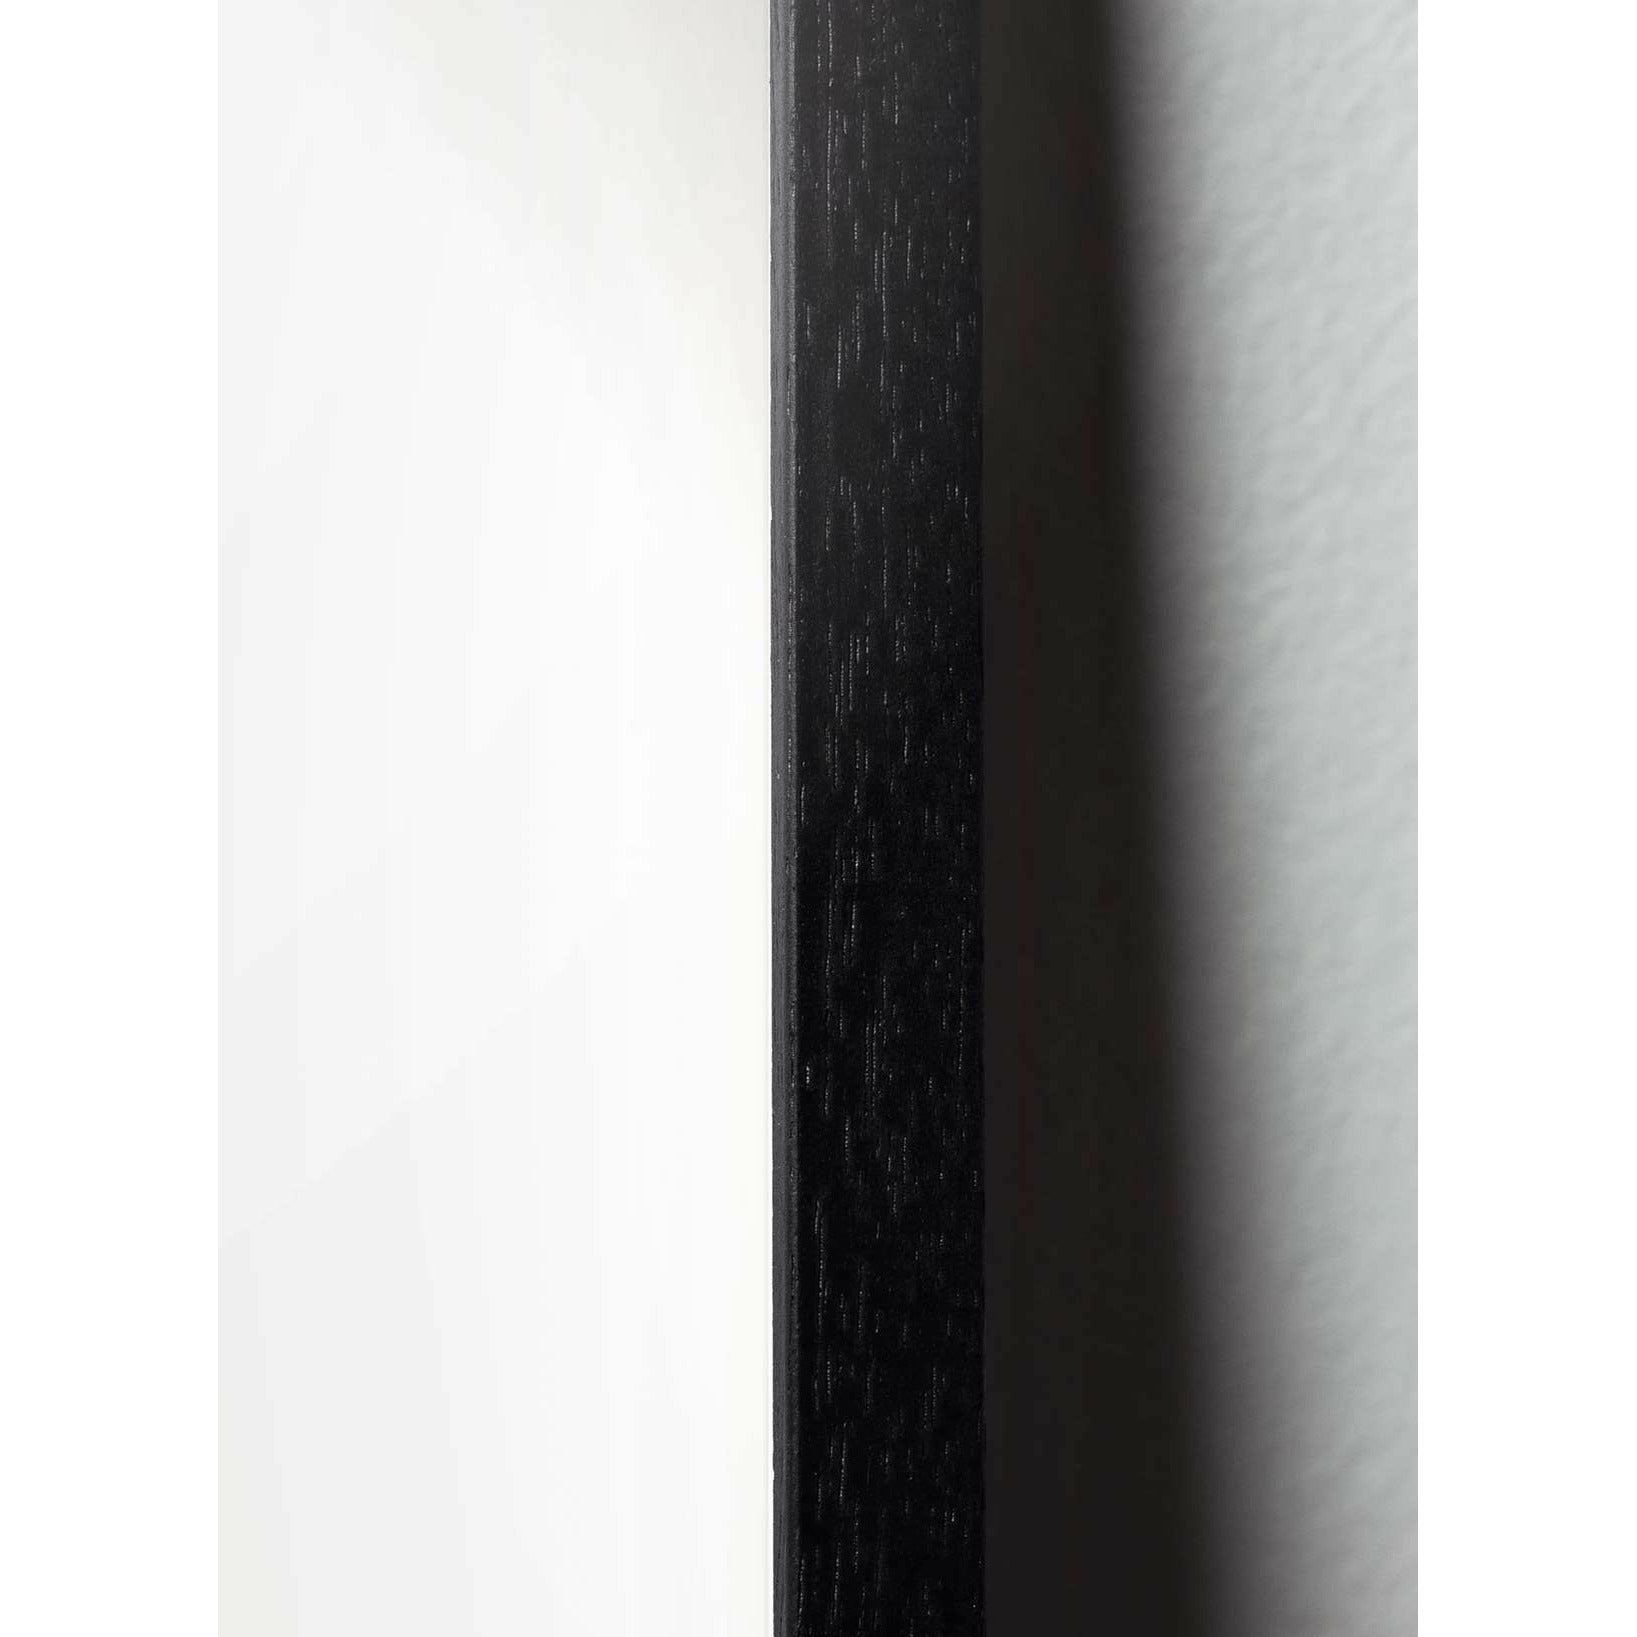 Póster de desfile de huevos de creación, marco hecho de madera lacada negra, A5